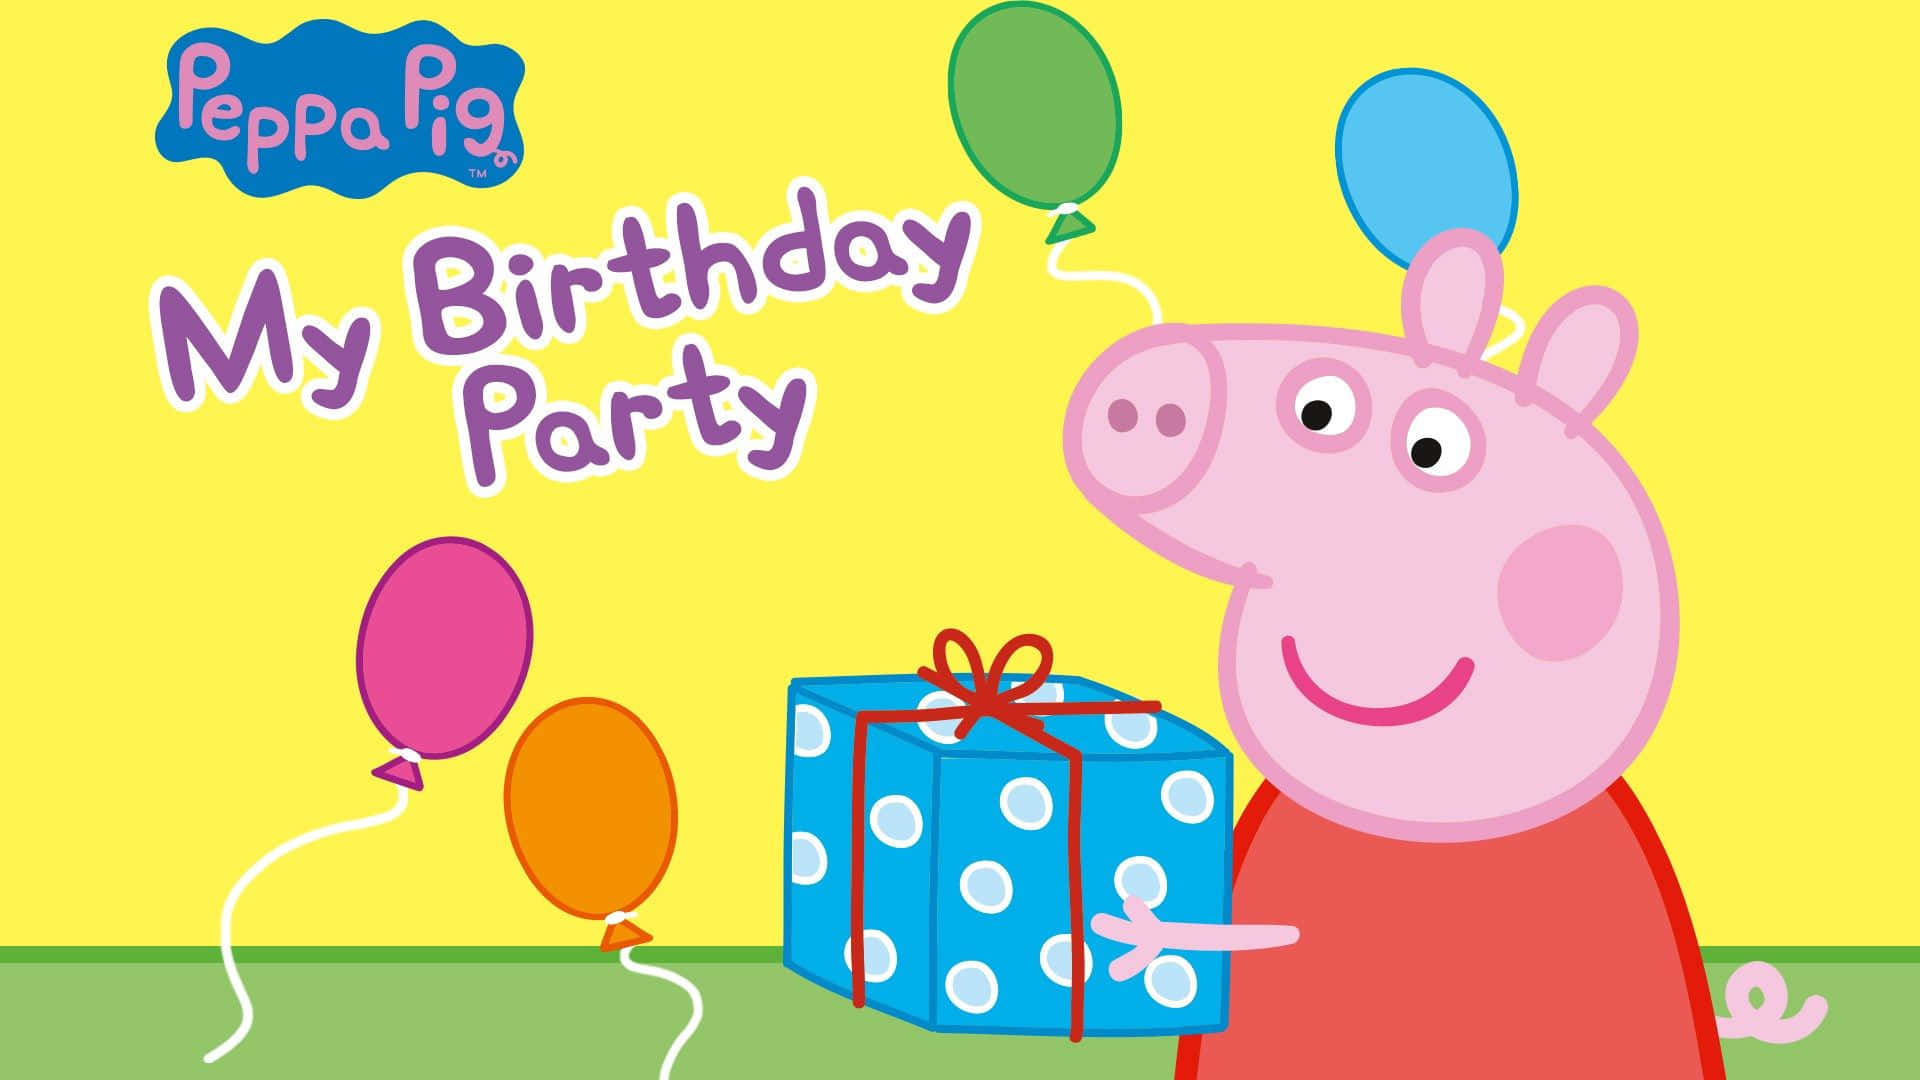 Freudigesgeburtstagsgeschenk Peppa Pig Hintergrund